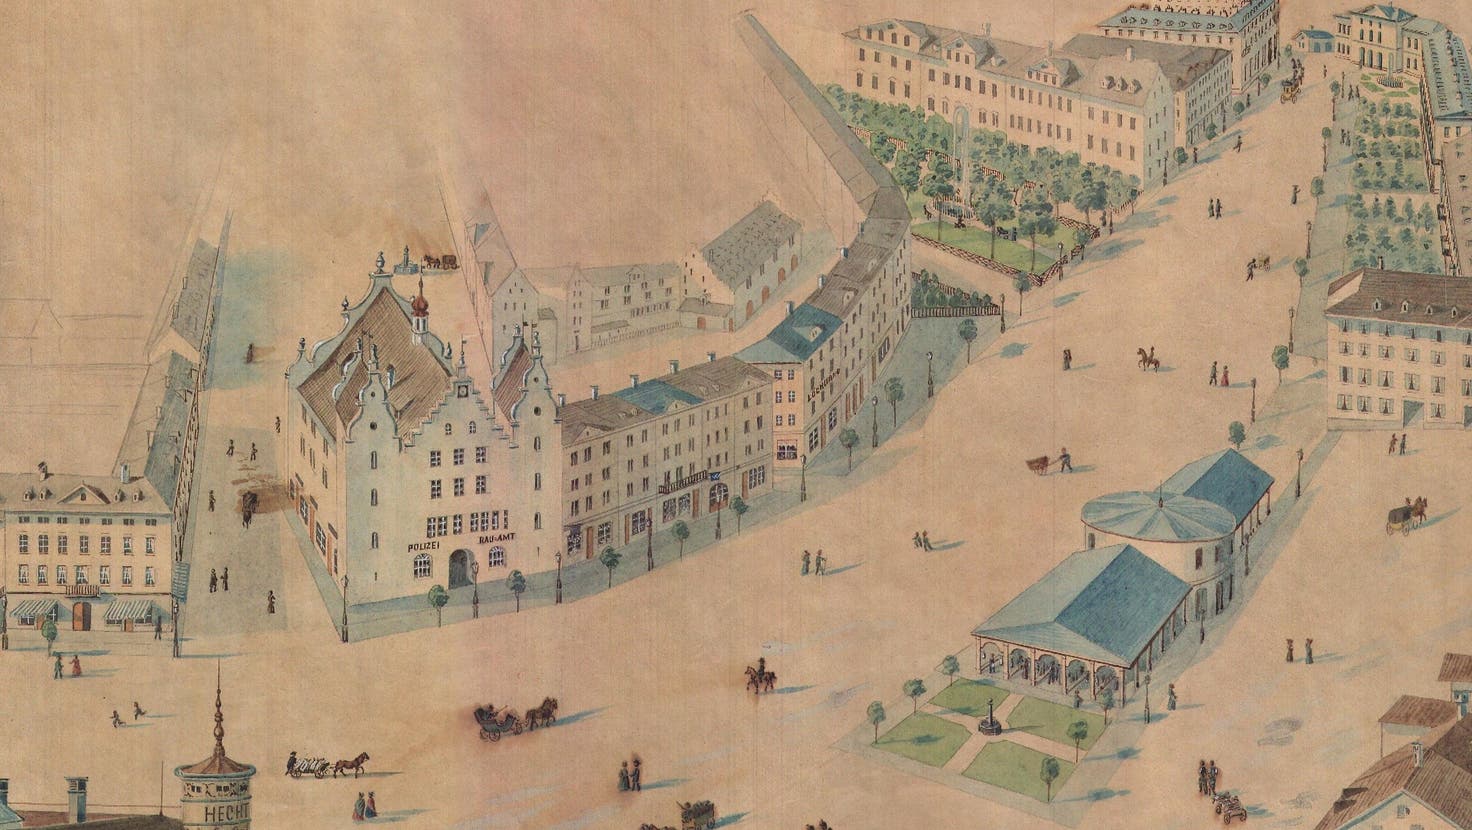 Der Plan von 1865 für die Neugestaltung des Marktplatzes vom alten Rathaus (oben links im Bild) über die Markthalle für 70 Stände bis zum Bahnhof (rechts oben im Bild). (Illustration: Sammlung Théo Buff)